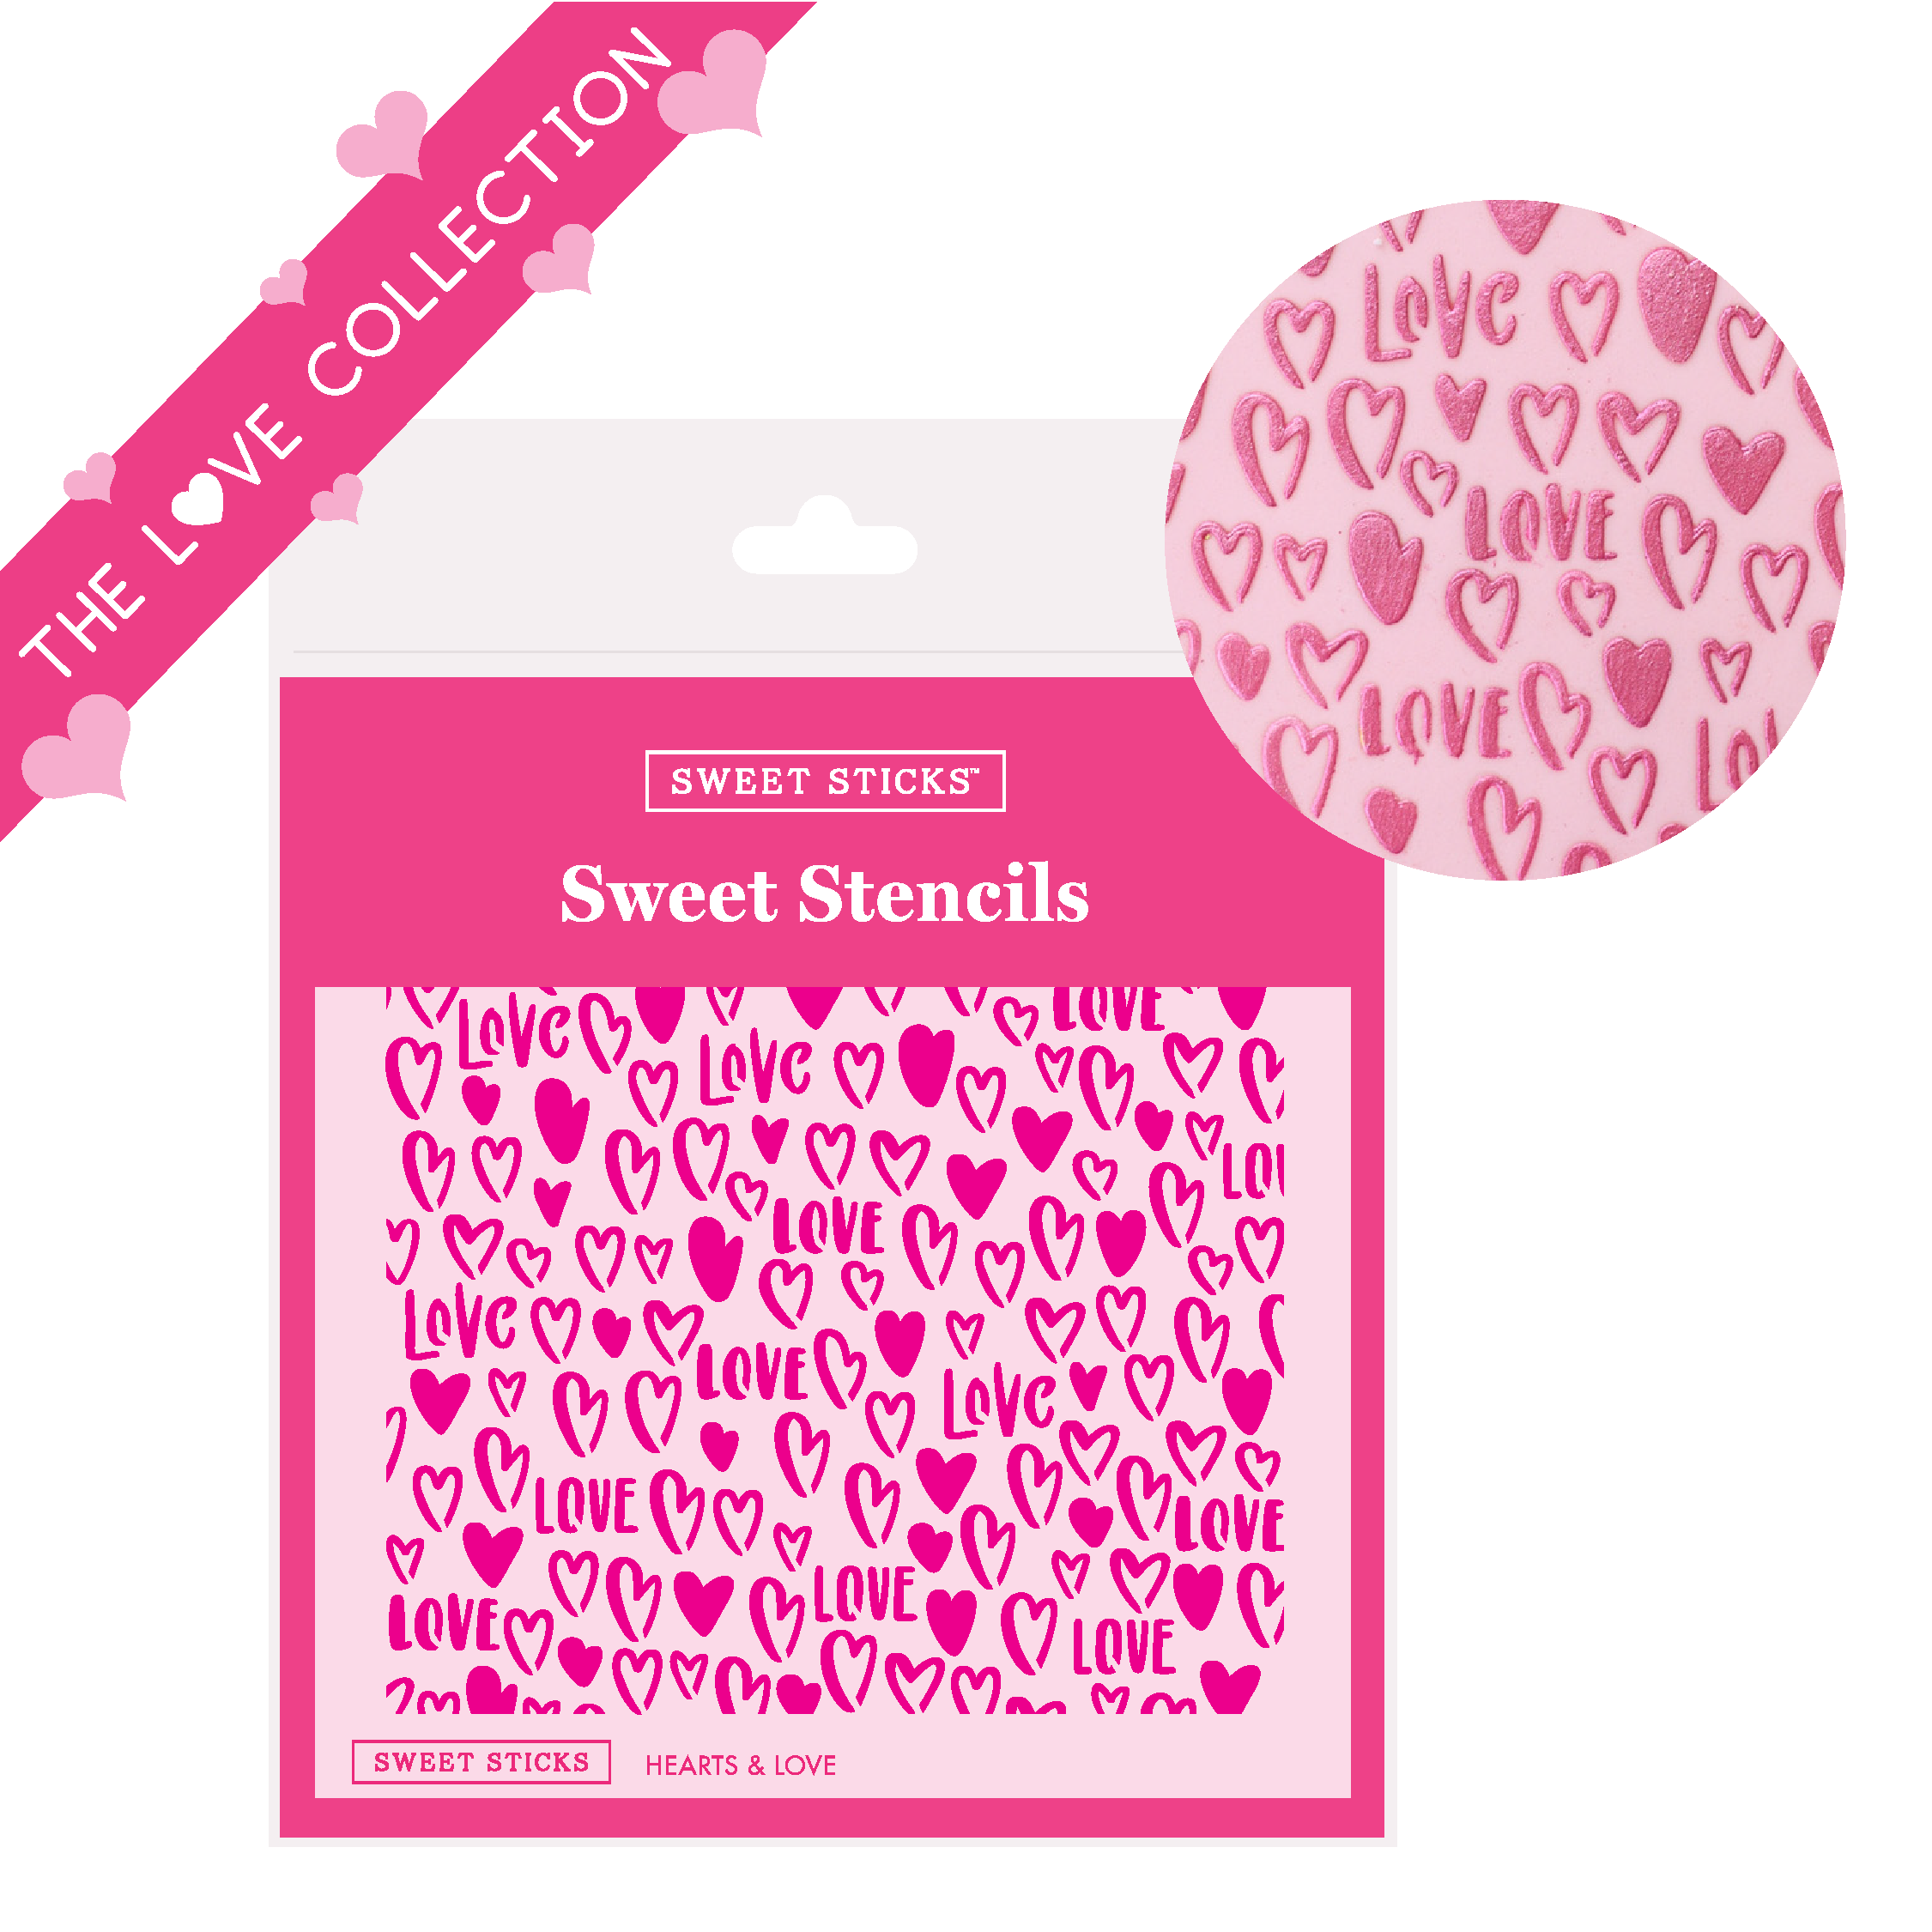 Hearts & Love Sweet Stencils by Sweet Sticks